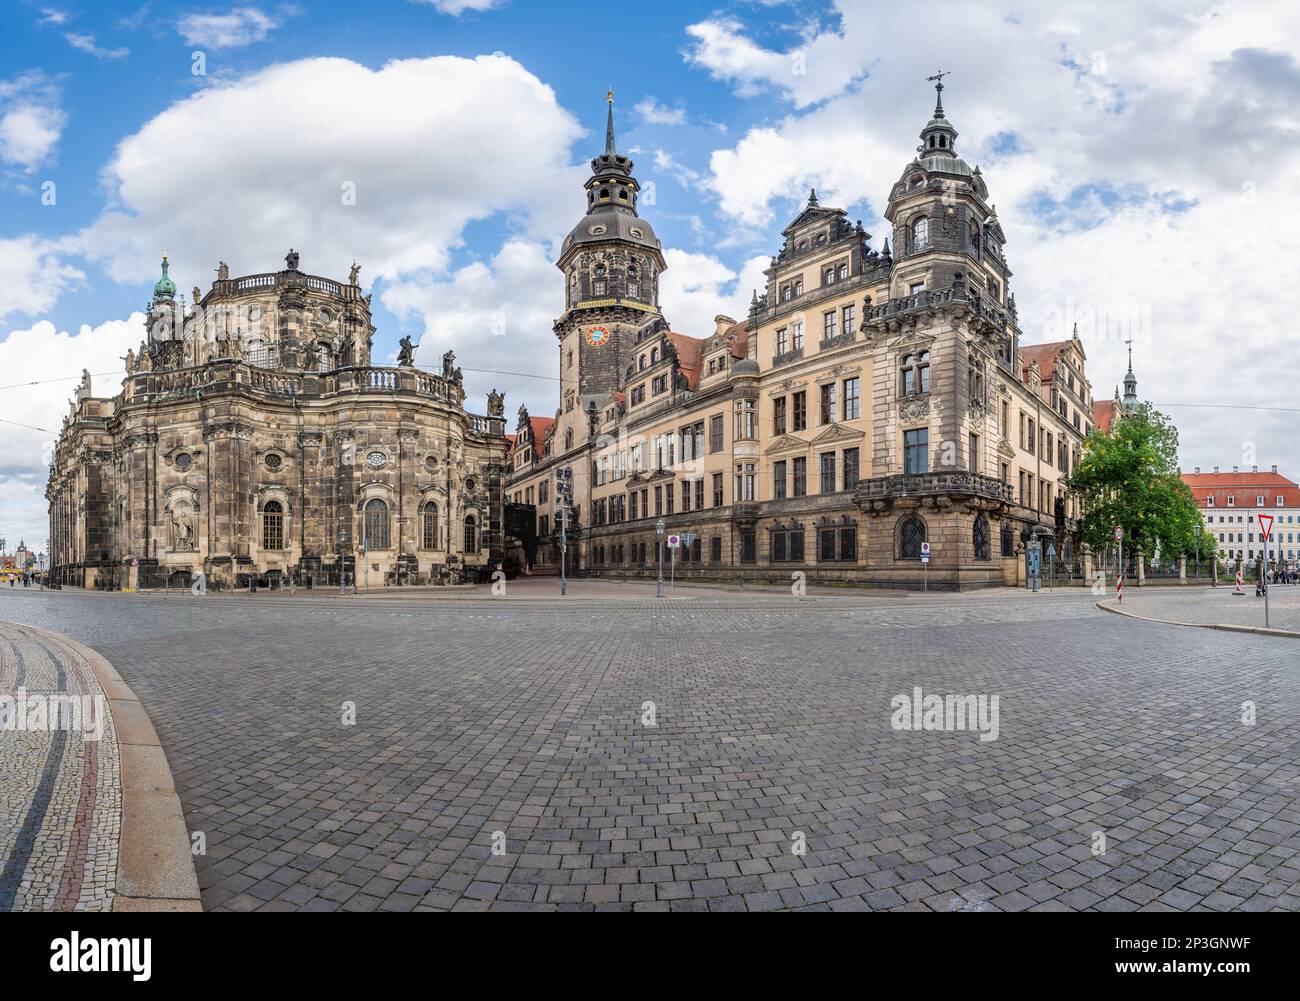 Panoramablick auf den katholischen Dom und das Dresdner Schloss - Dresden, Sachsen, Deutschland Stockfoto